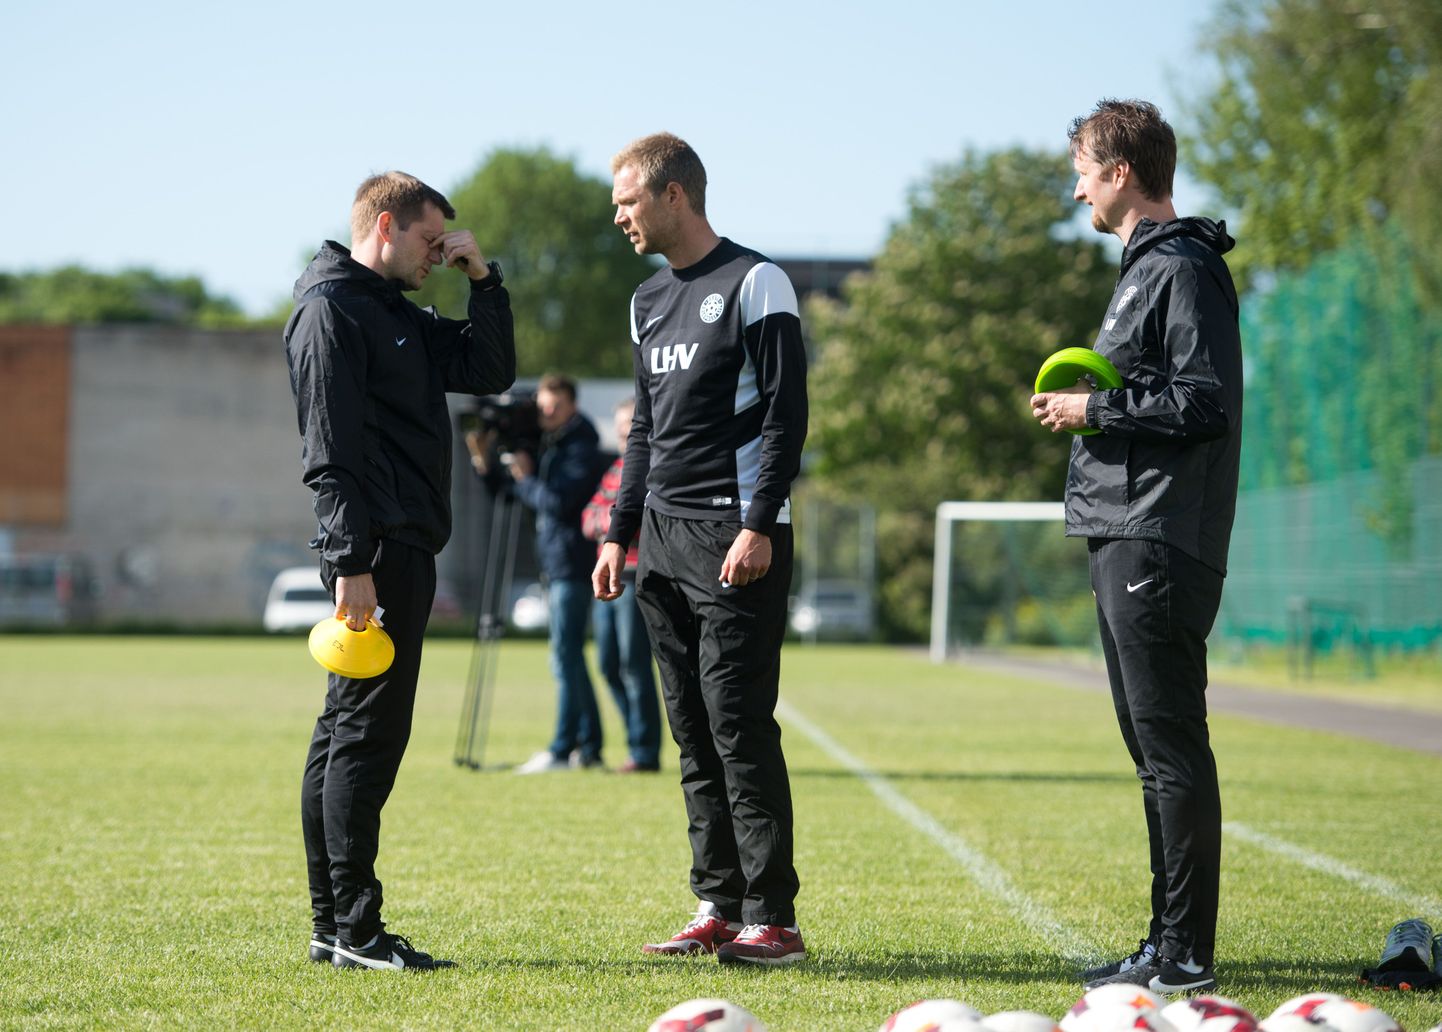 Jalgpallikoondise treenerid Janno Kivisild (vasakult), Magnus Pehrsson ja Jesper Norberg peavad oma ideed ja mängustiili viima ka noortekoondistesse.